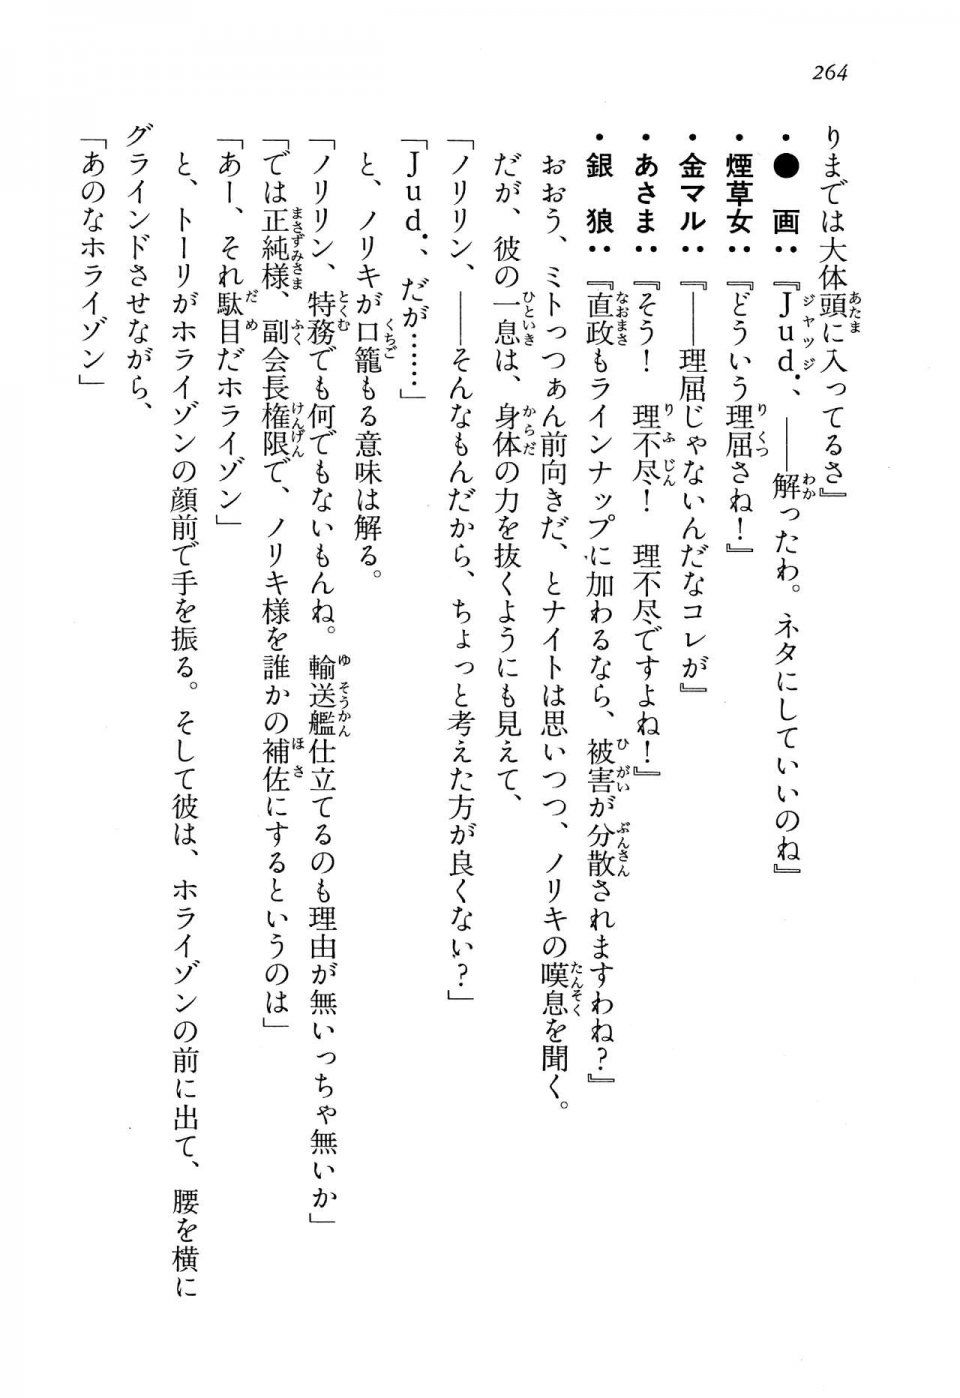 Kyoukai Senjou no Horizon LN Vol 13(6A) - Photo #264